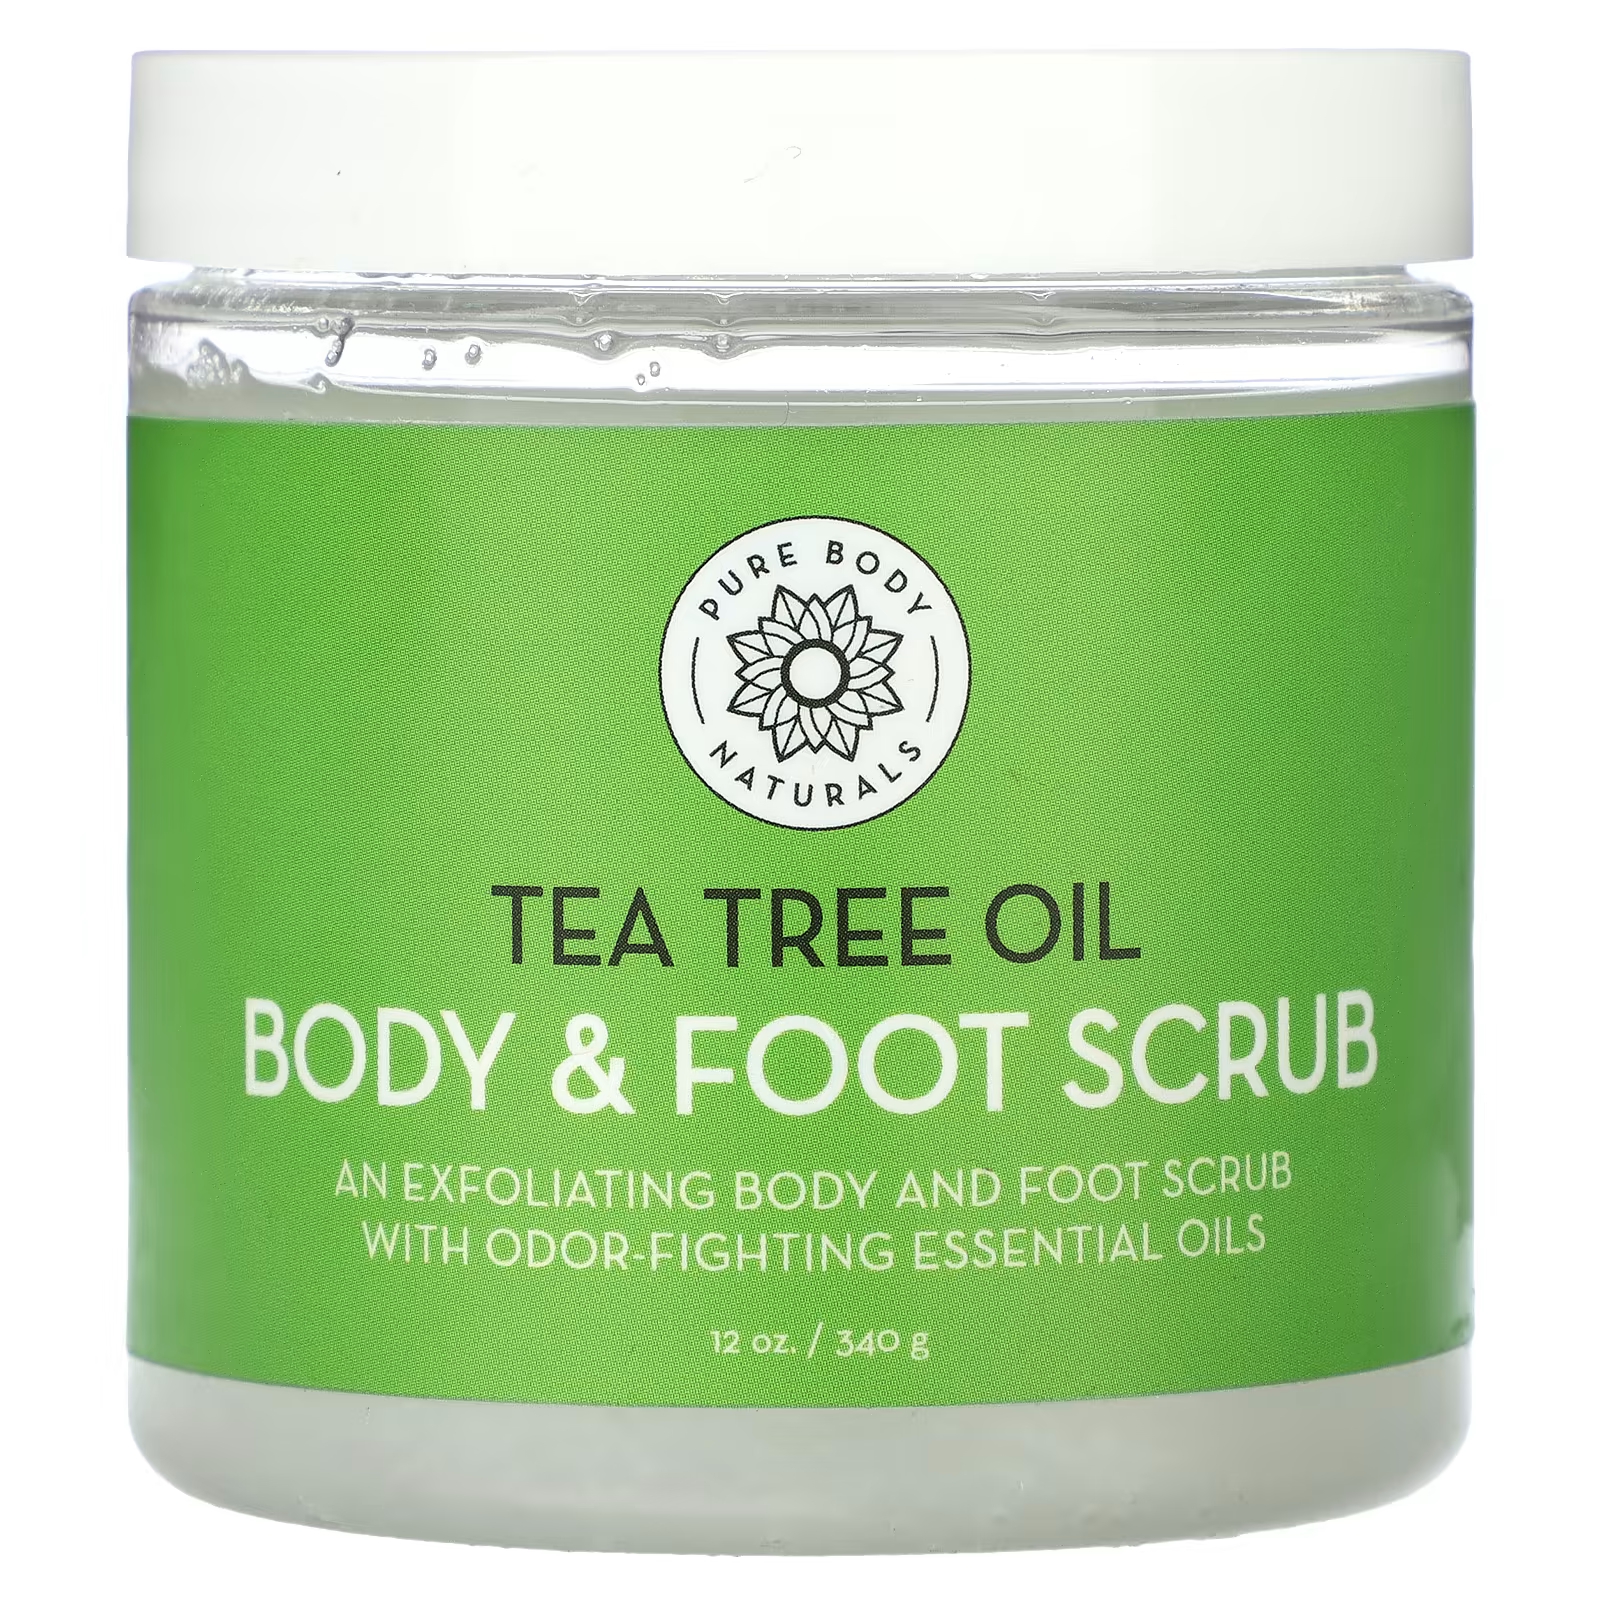 Скраб для тела и ног Pure Body Naturals, масло чайного дерева скраб для ног petal fresh отшелушивающий и очищающий скраб для ног